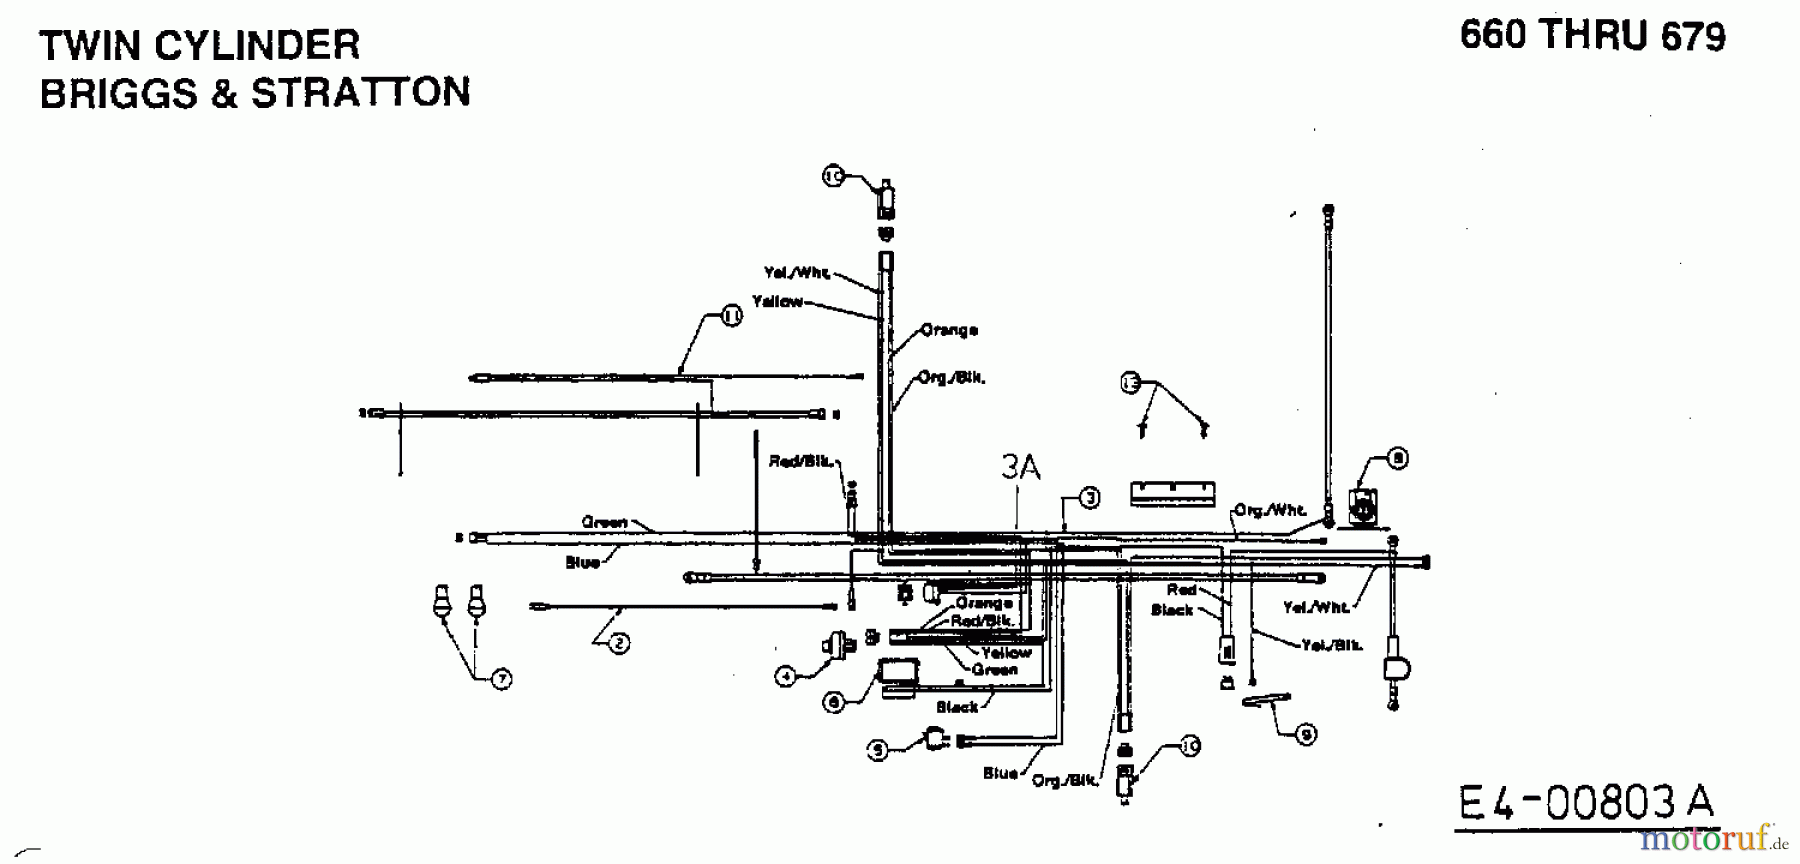  MTD Rasentraktoren H 160 13AF695G678  (1998) Schaltplan 2 Zylinder